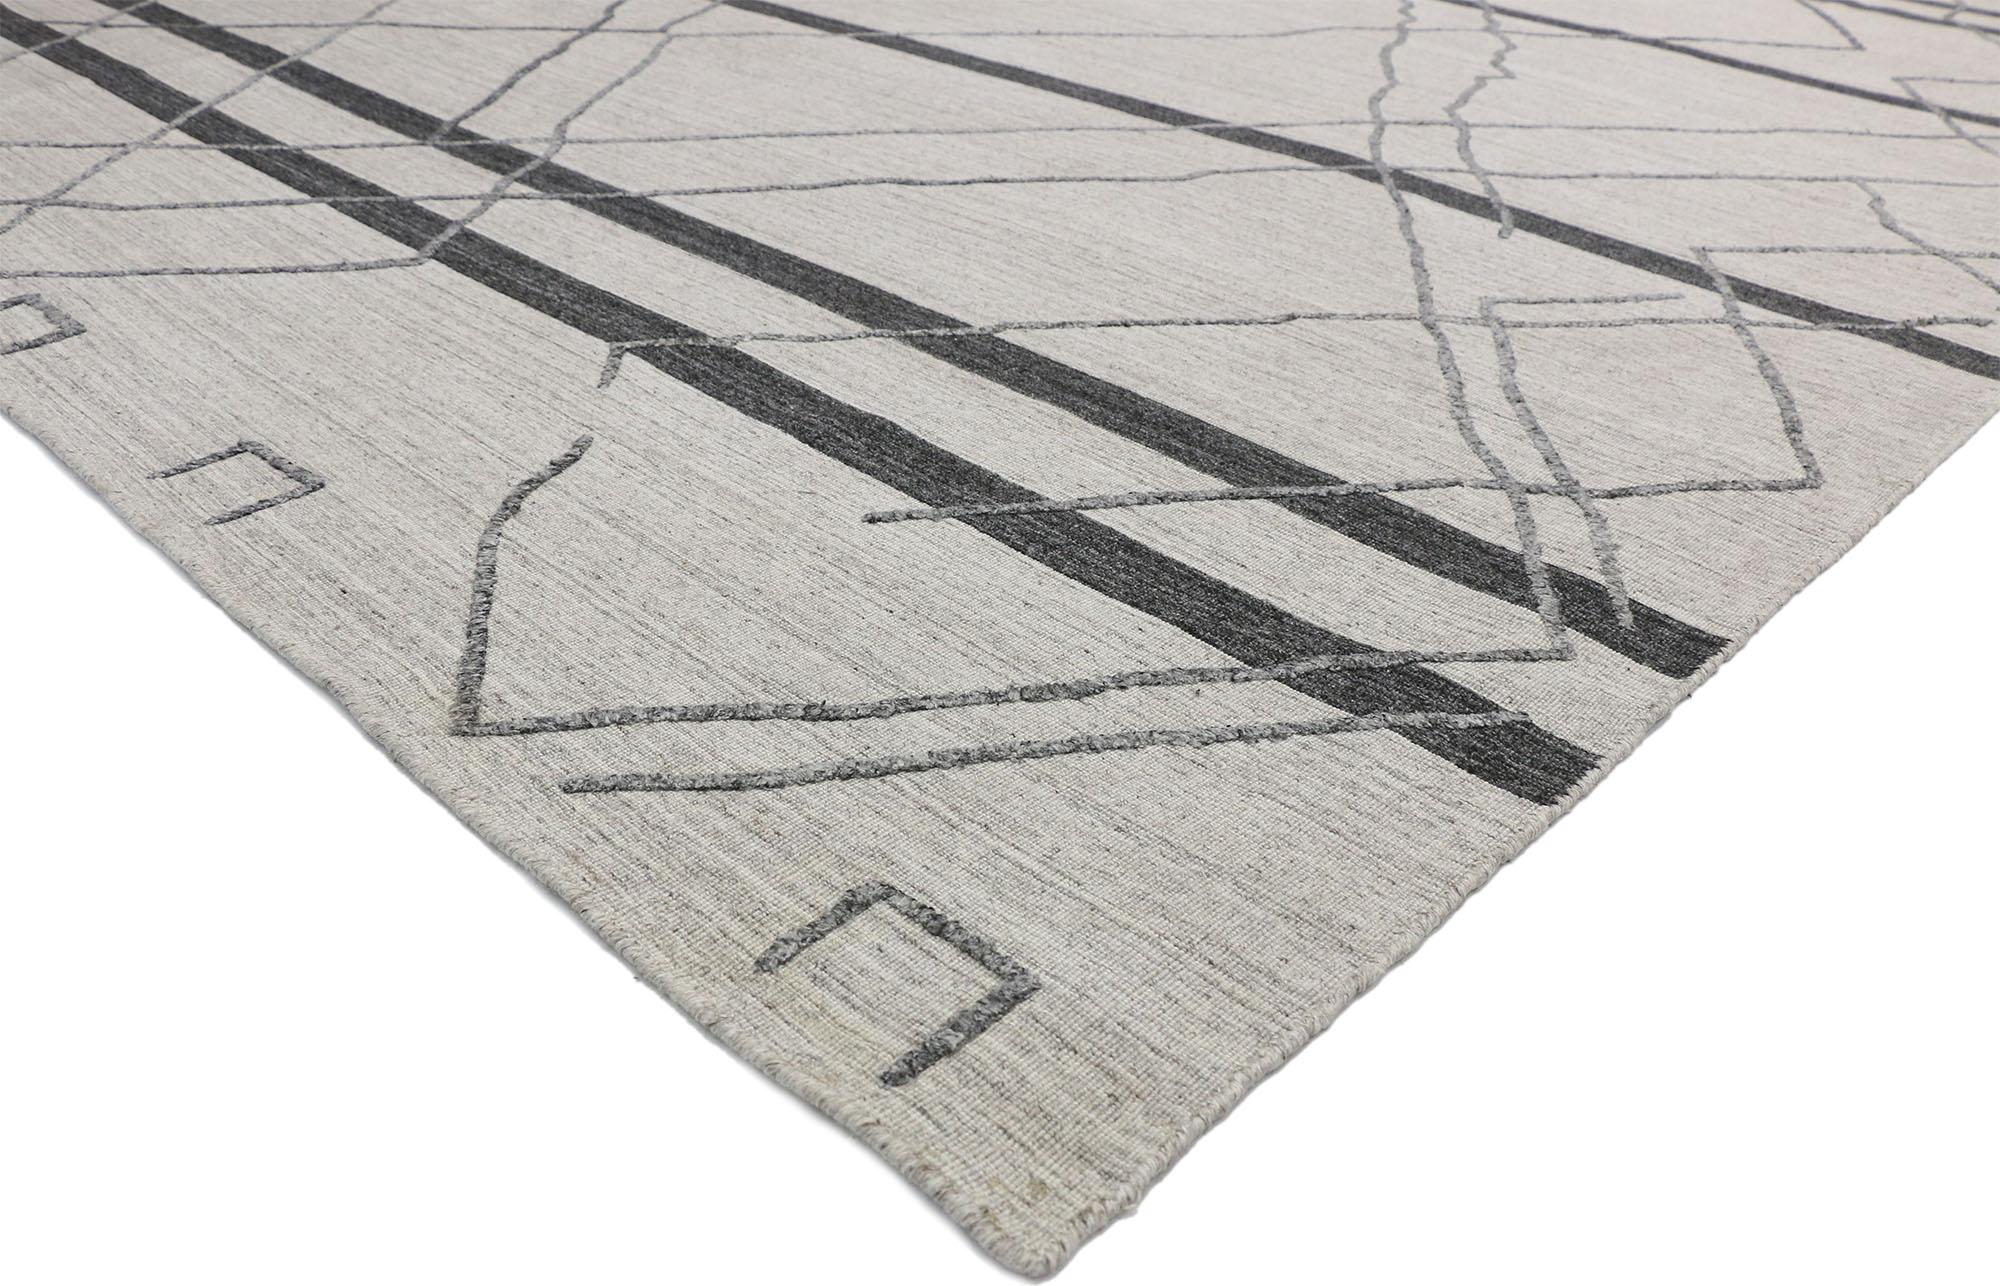 30428, tapis contemporain gris moderne de style marocain avec design en relief, tapis de texture. Des vibrations hygge chaleureuses rencontrent des motifs tribaux dans ce tapis gris contemporain de style marocain. Fusion dynamique des tendances